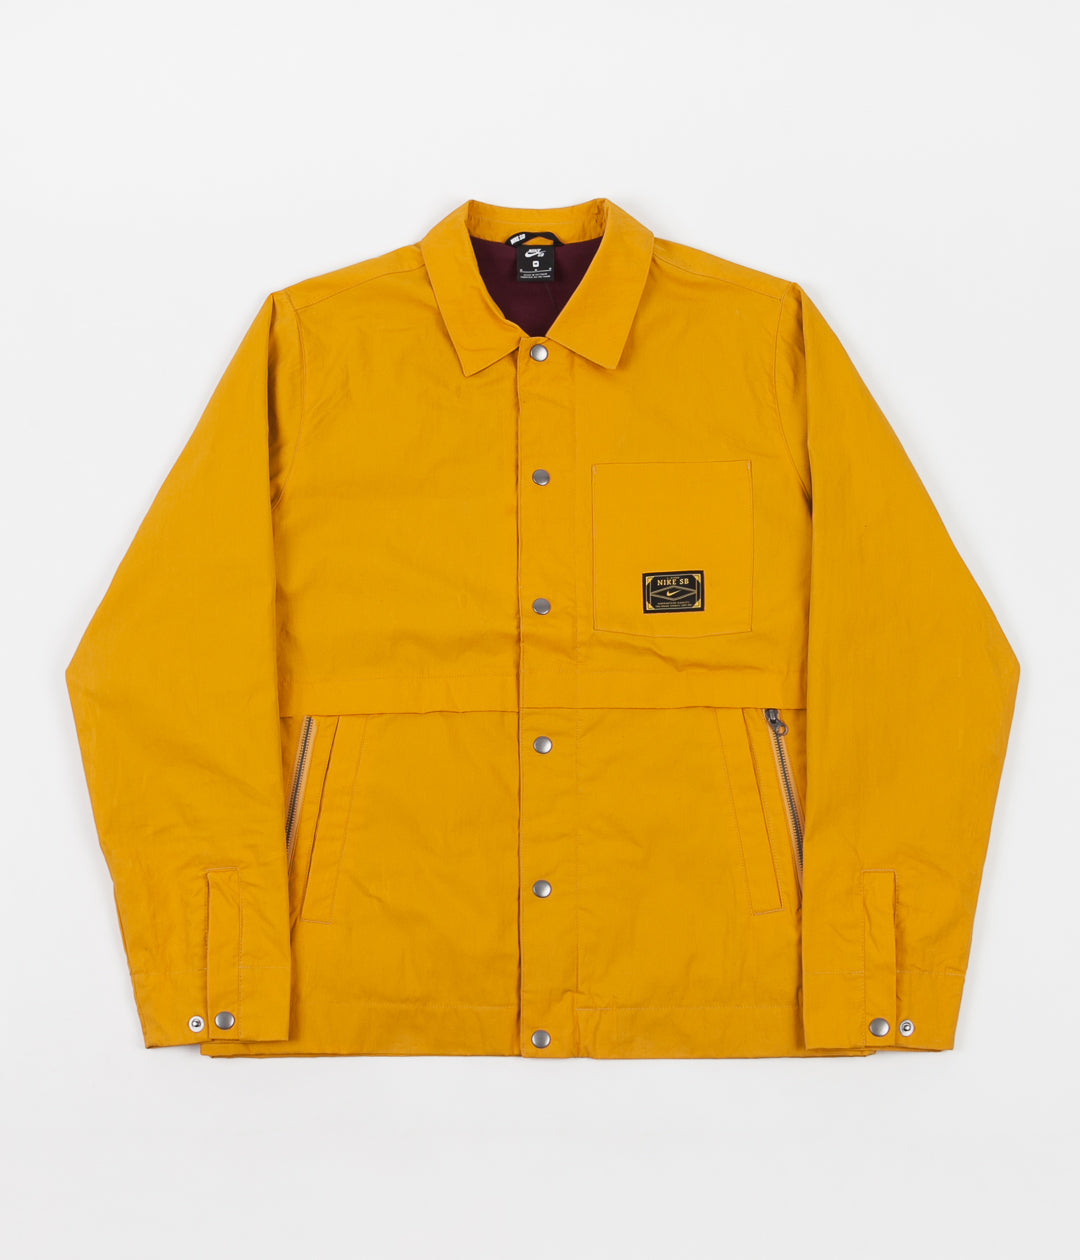 nike sb orange label jacket